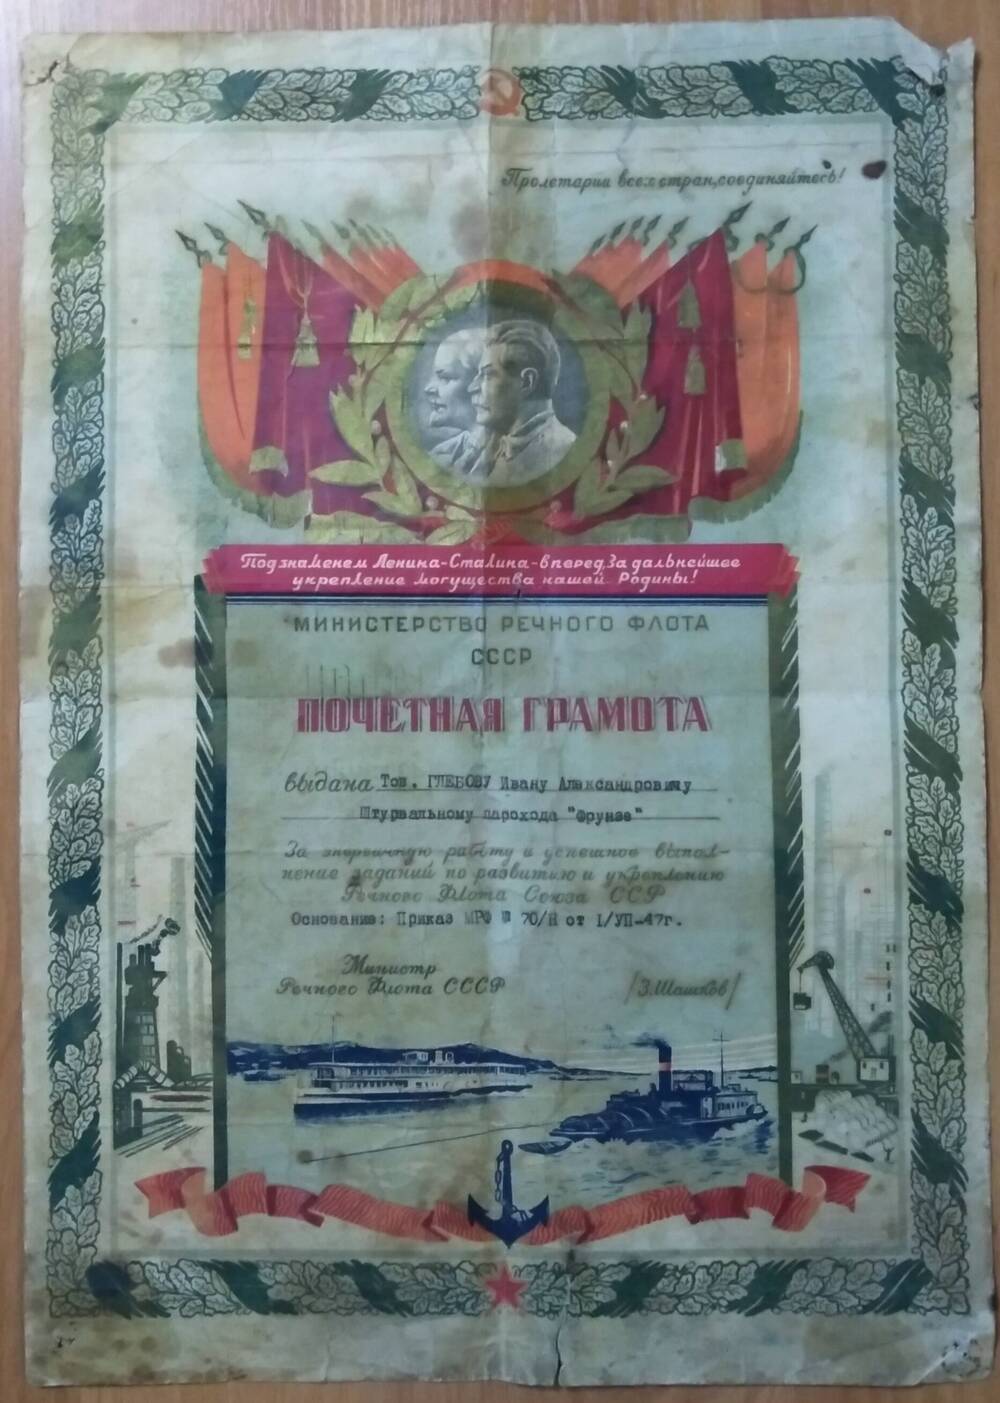 Почетная грамота Глебову И.А., штурвальному парохода Фрунзе от Министерства речного флота СССР, 1947 г.